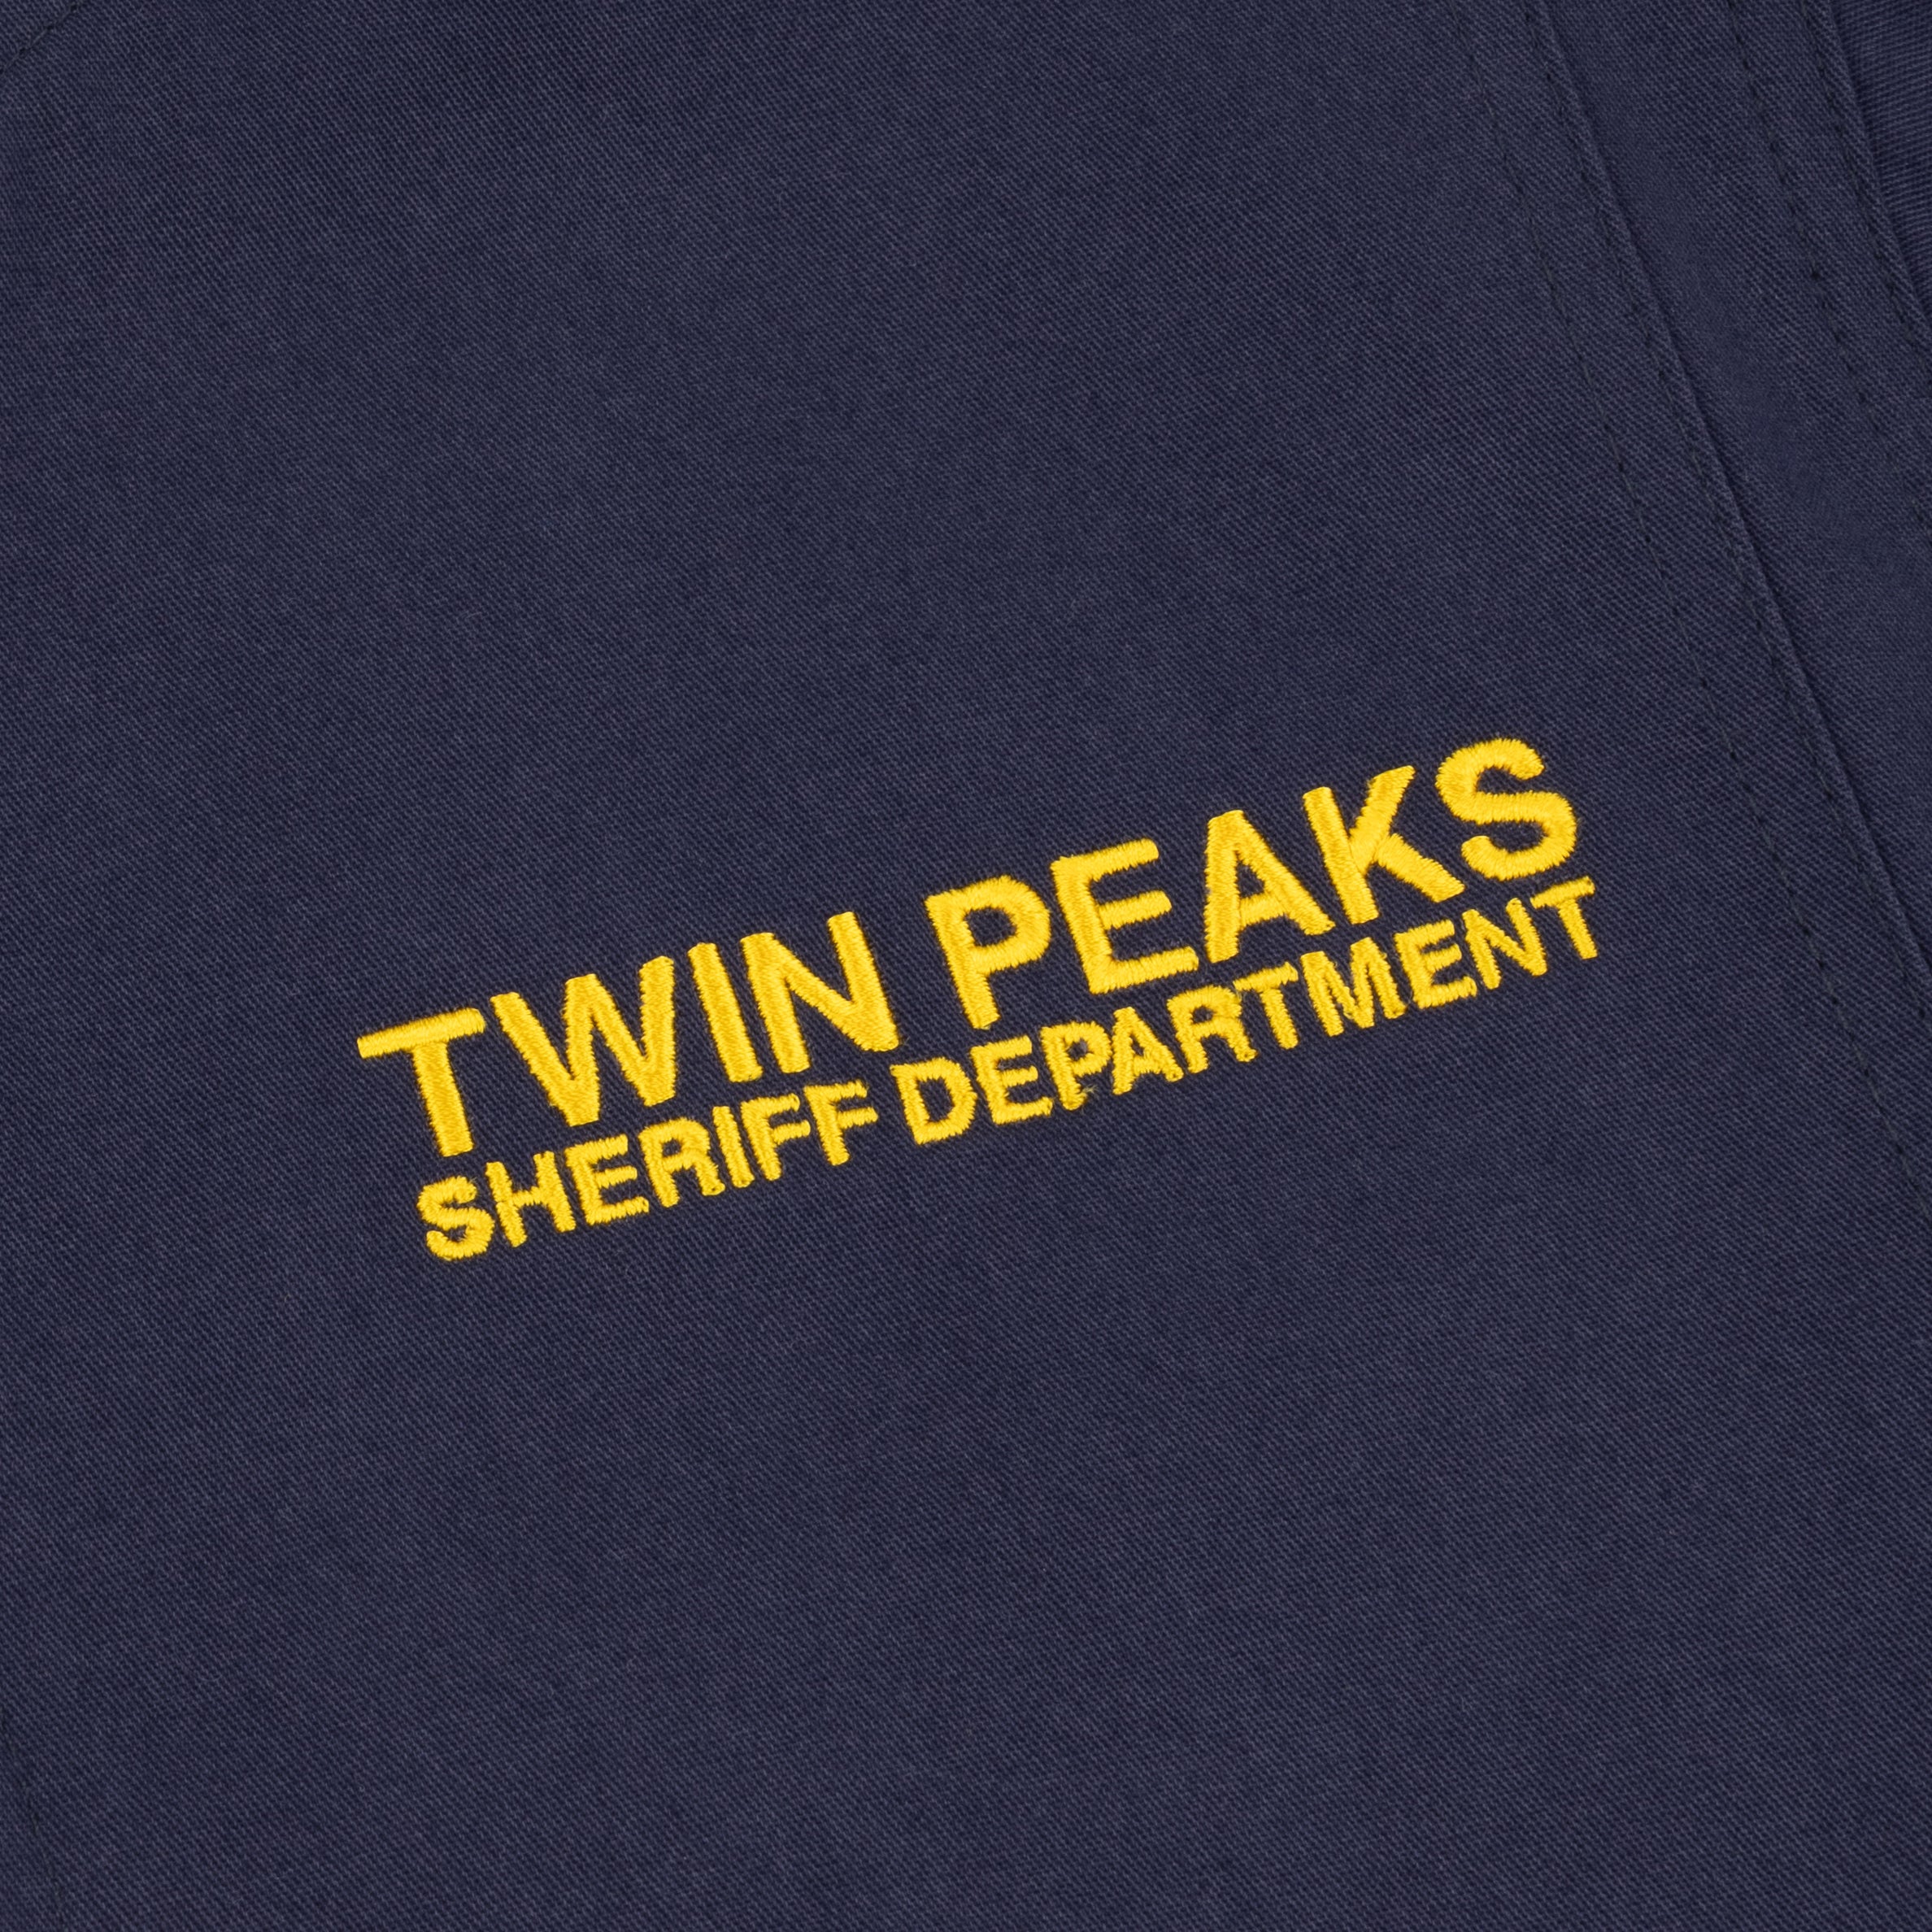 TSPTR x TWIN PEAKS SHERIFF DEPT Jacket